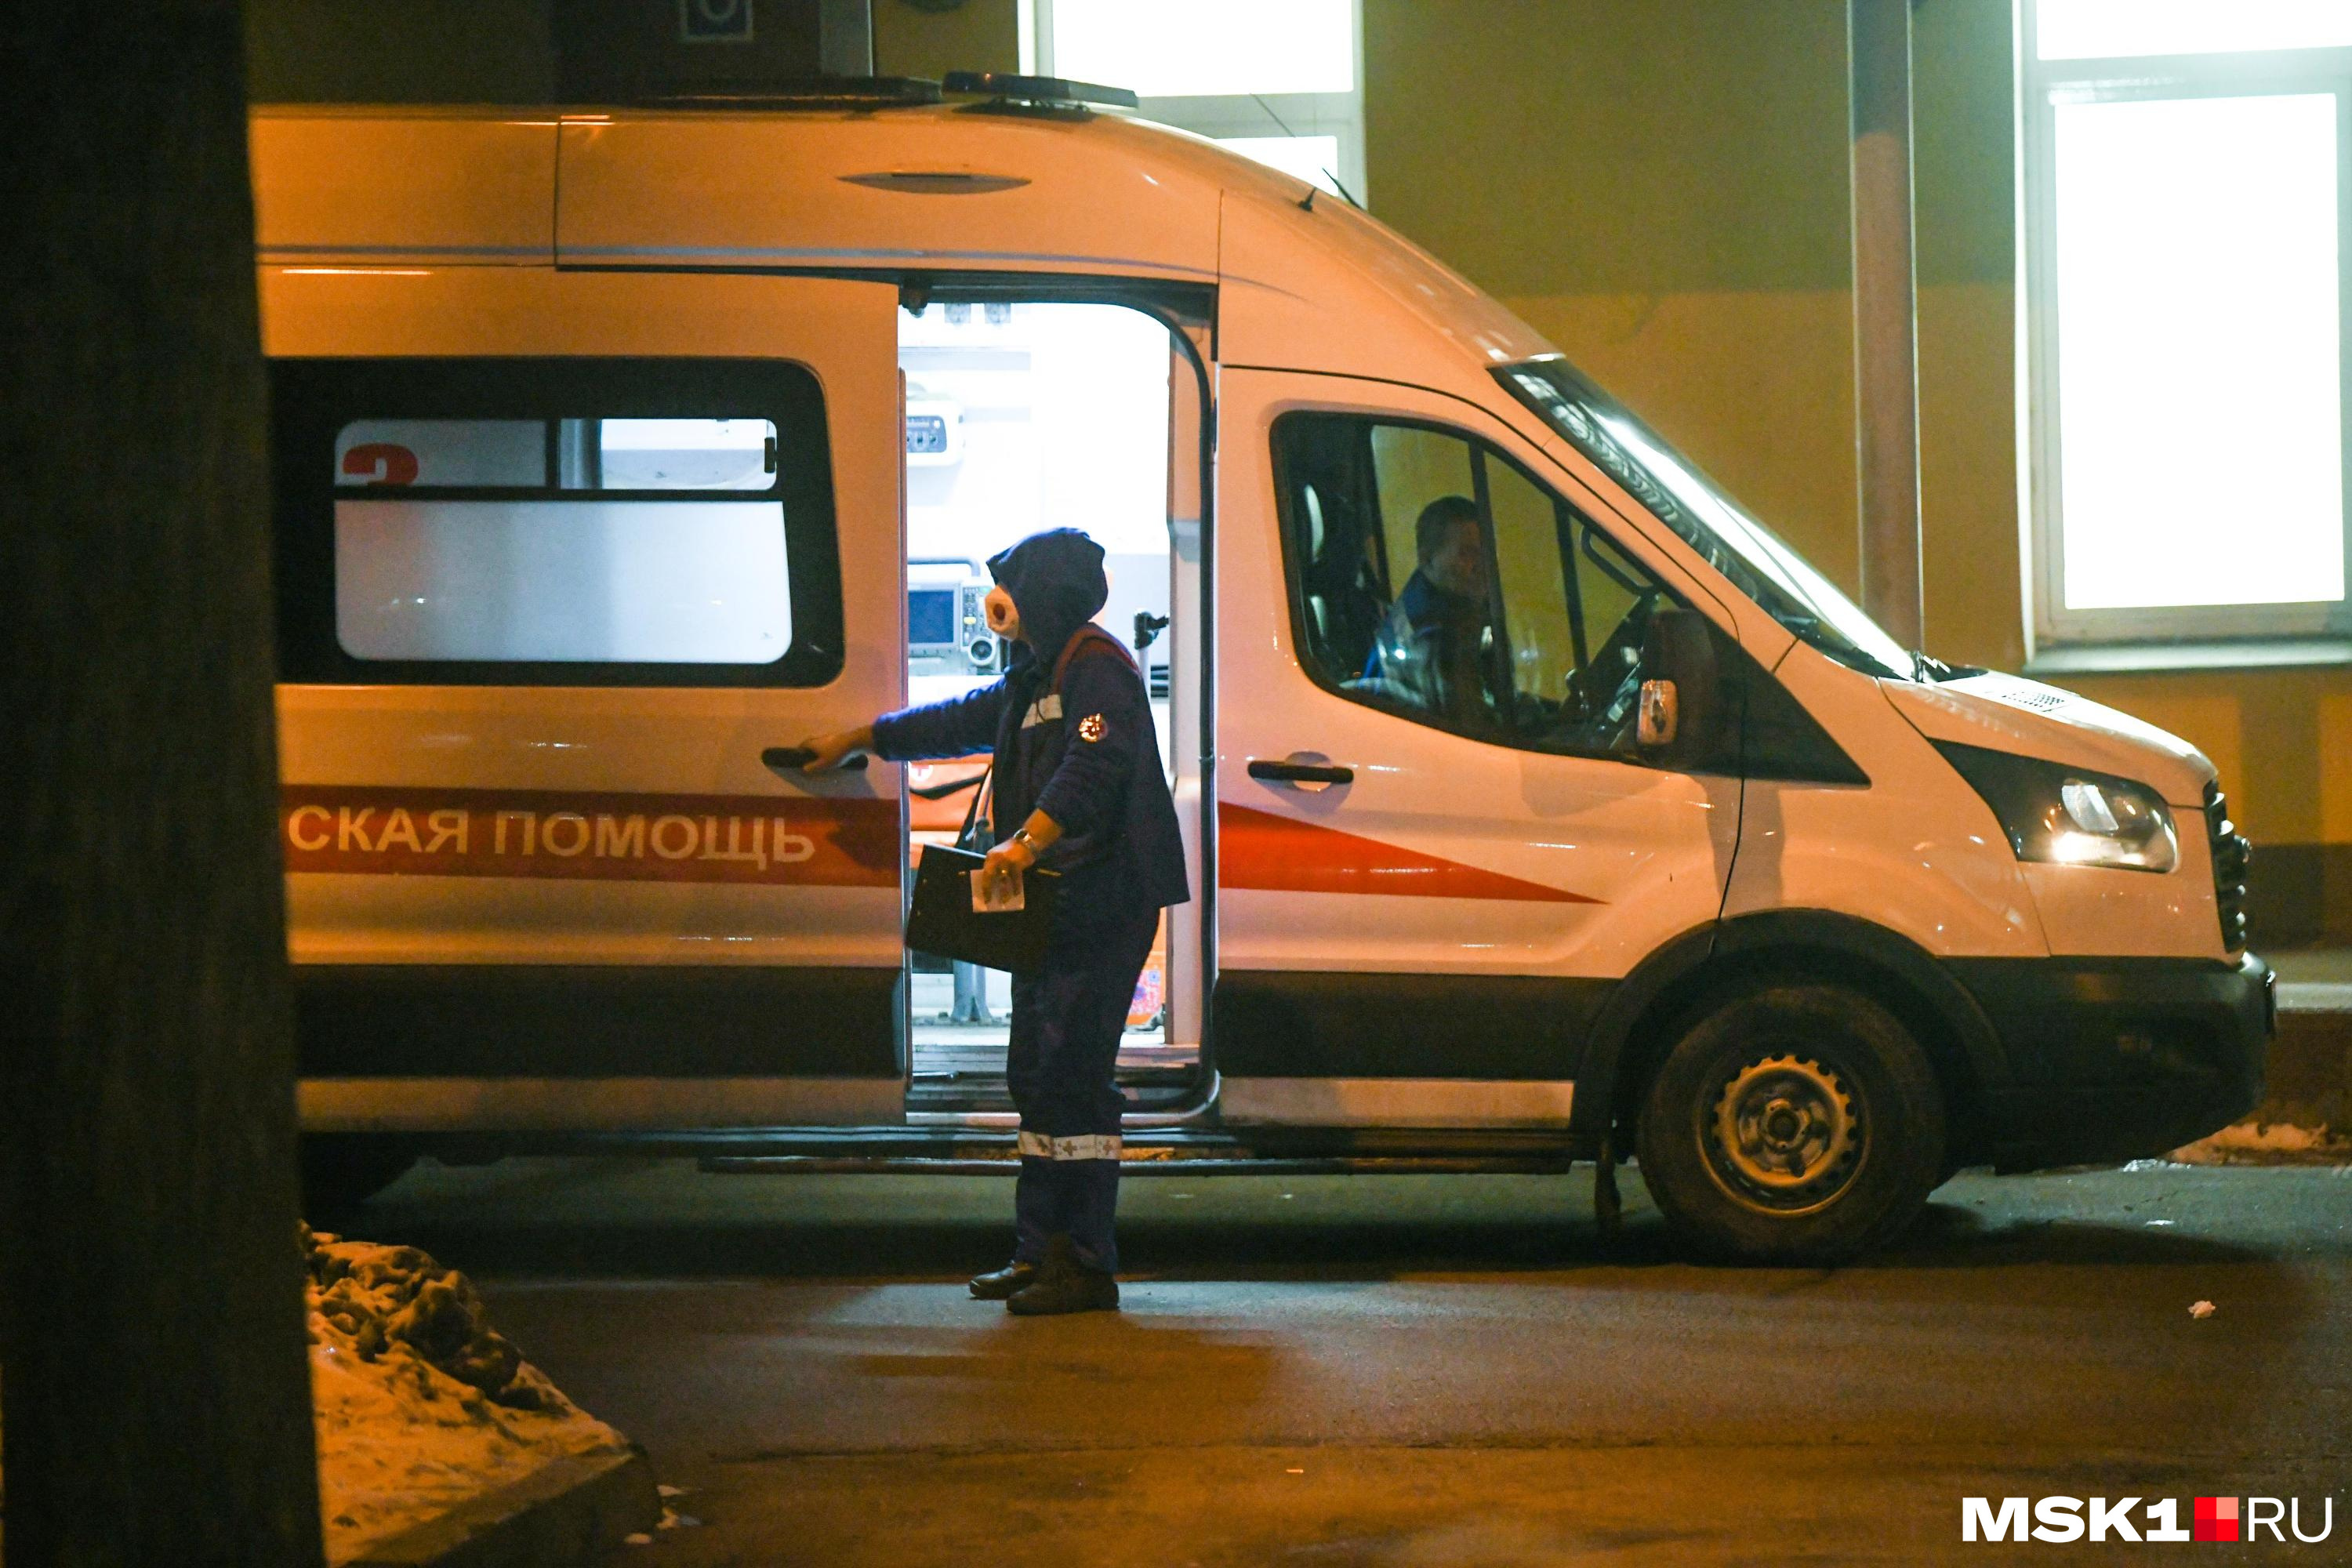 Частную скорую в Кемерове, бригада которой избила пациента, закрыли